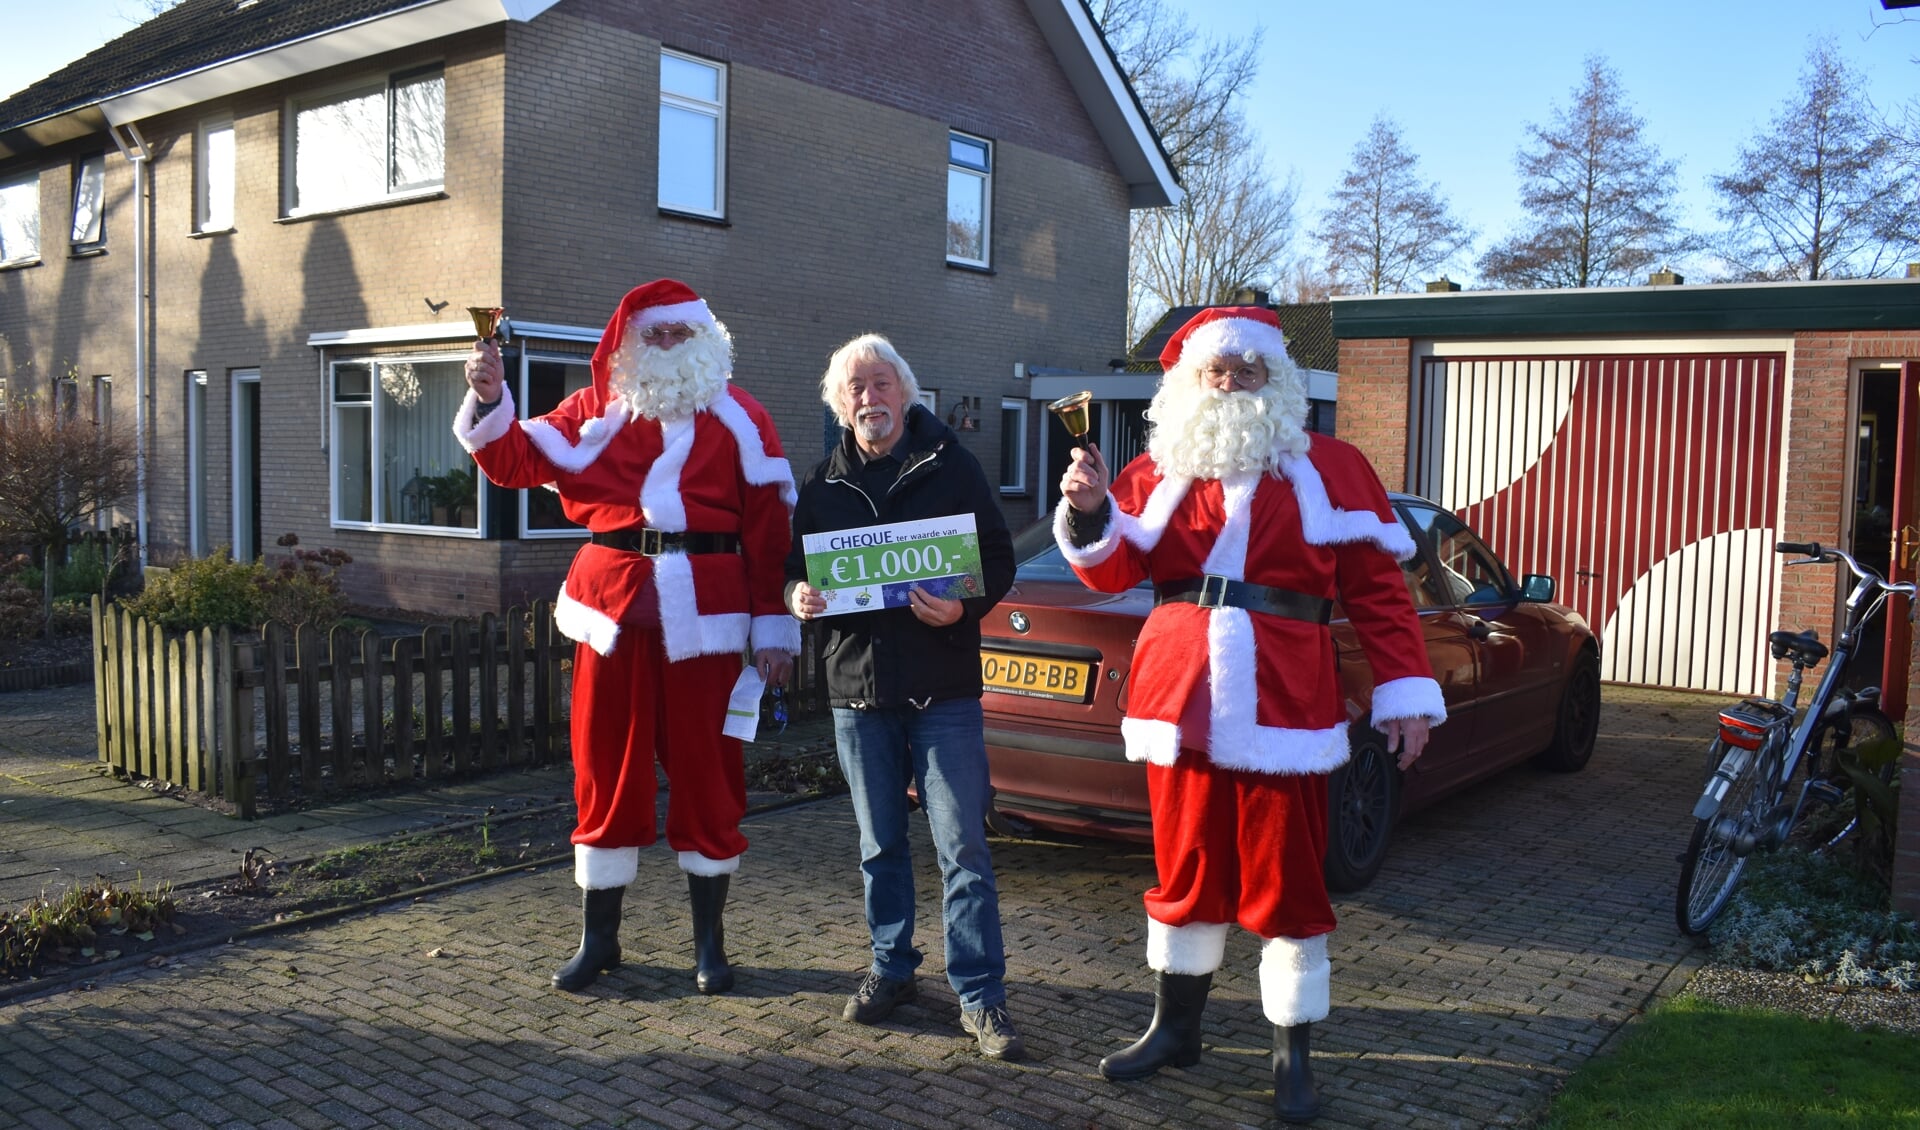 De Enerzjykoöperaasje Garyp deelde op 24 december 2020 kerstcadeaus uit aan verenigingen in Garyp: 25 maal duizend euro. Rinze Hoogstins ontving zo'n cheque voor de Gariper visclub De Poask.